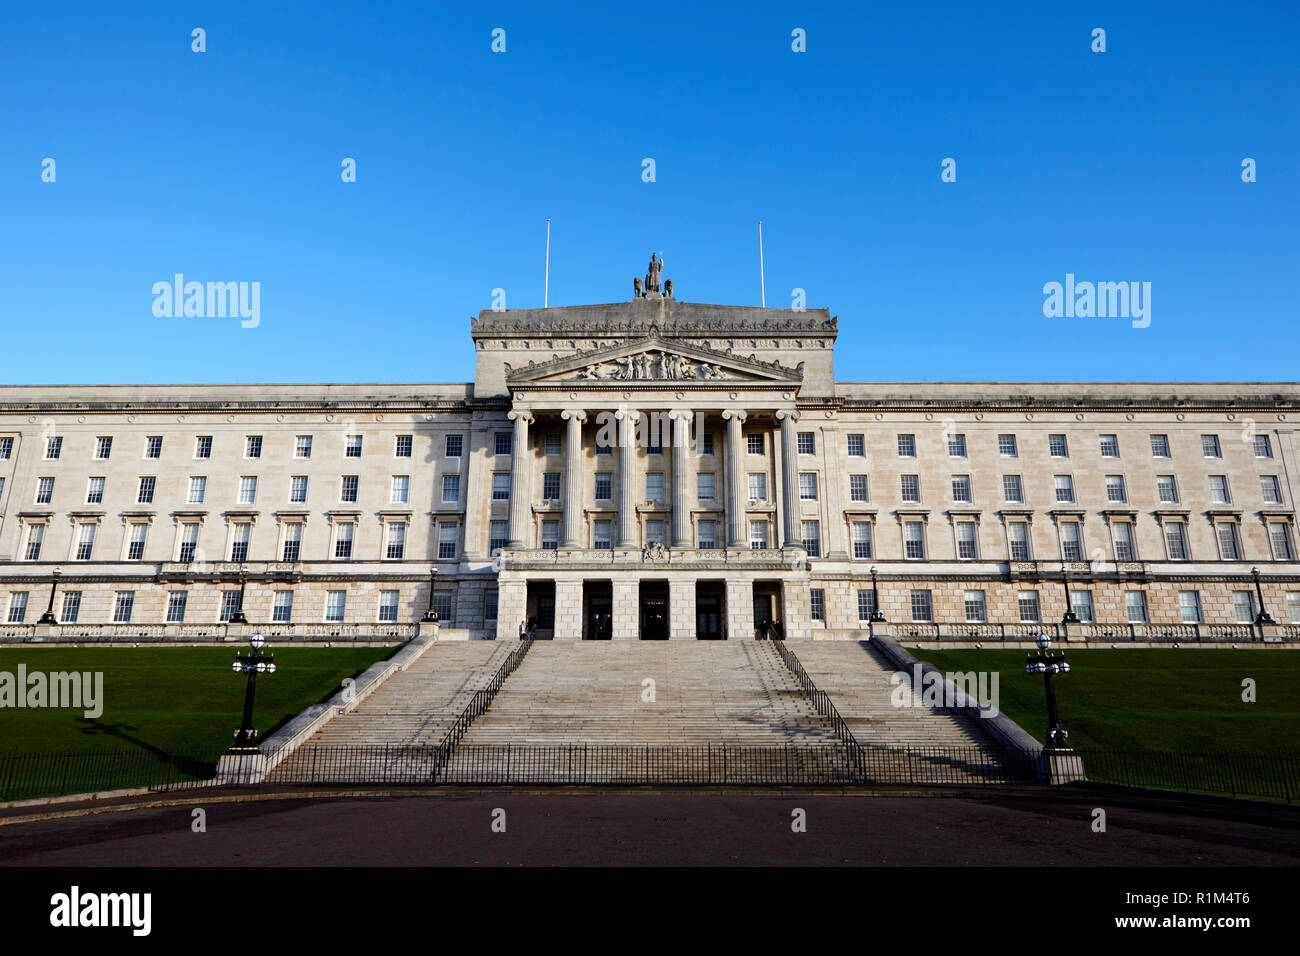 Gli edifici del Parlamento stormont belfast Irlanda del Nord Foto Stock